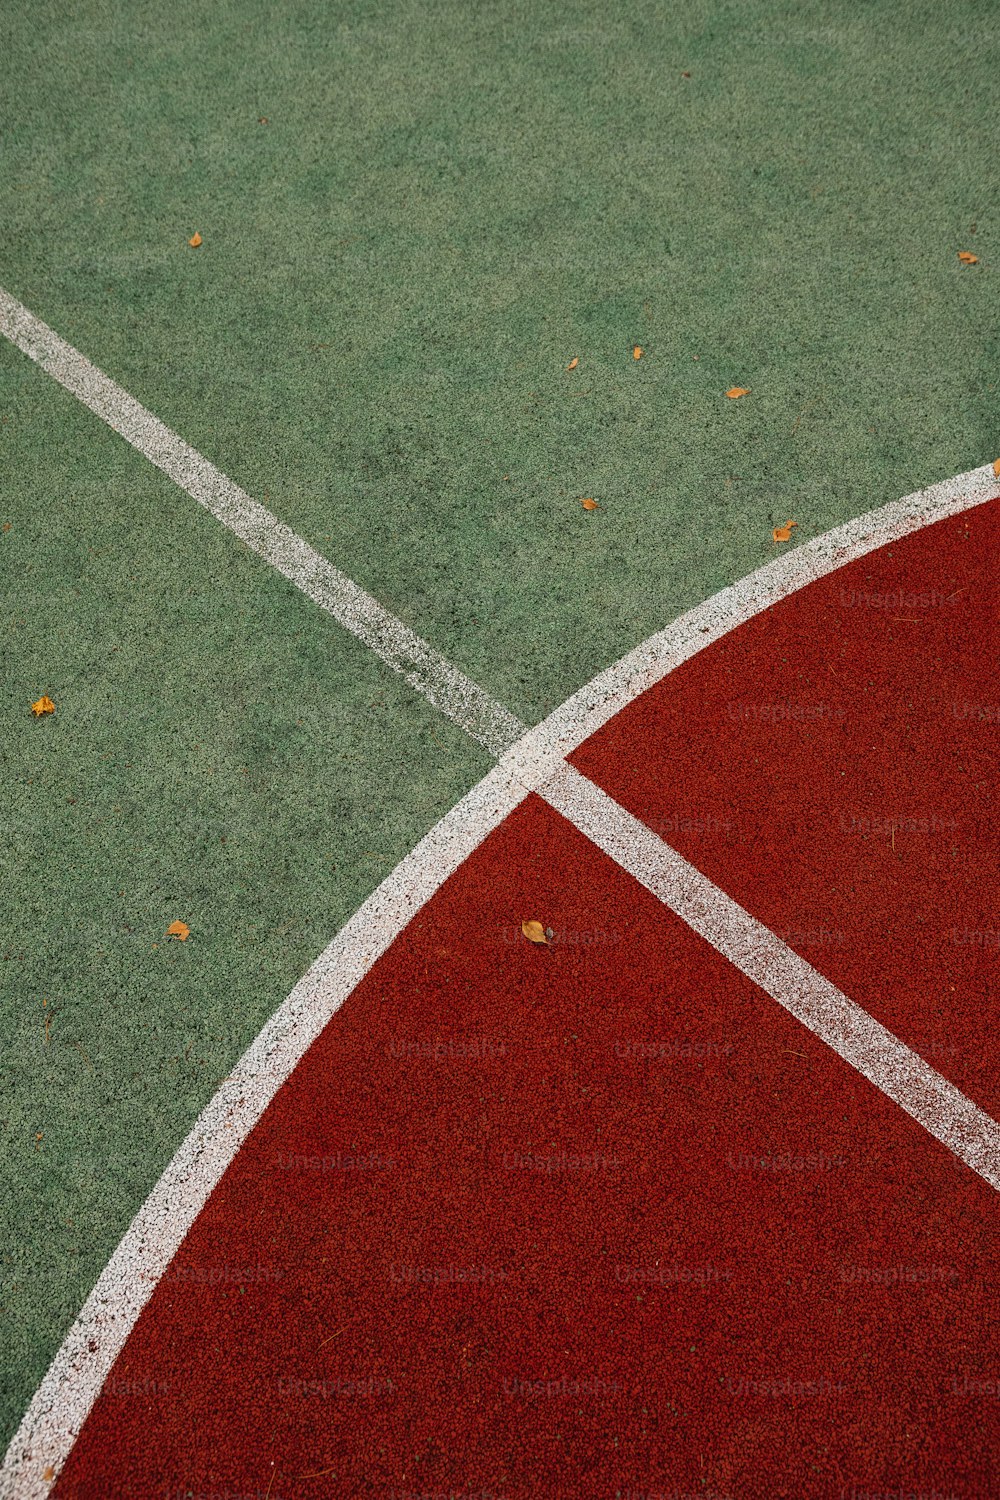 un gros plan d’un court de tennis avec une raquette de tennis